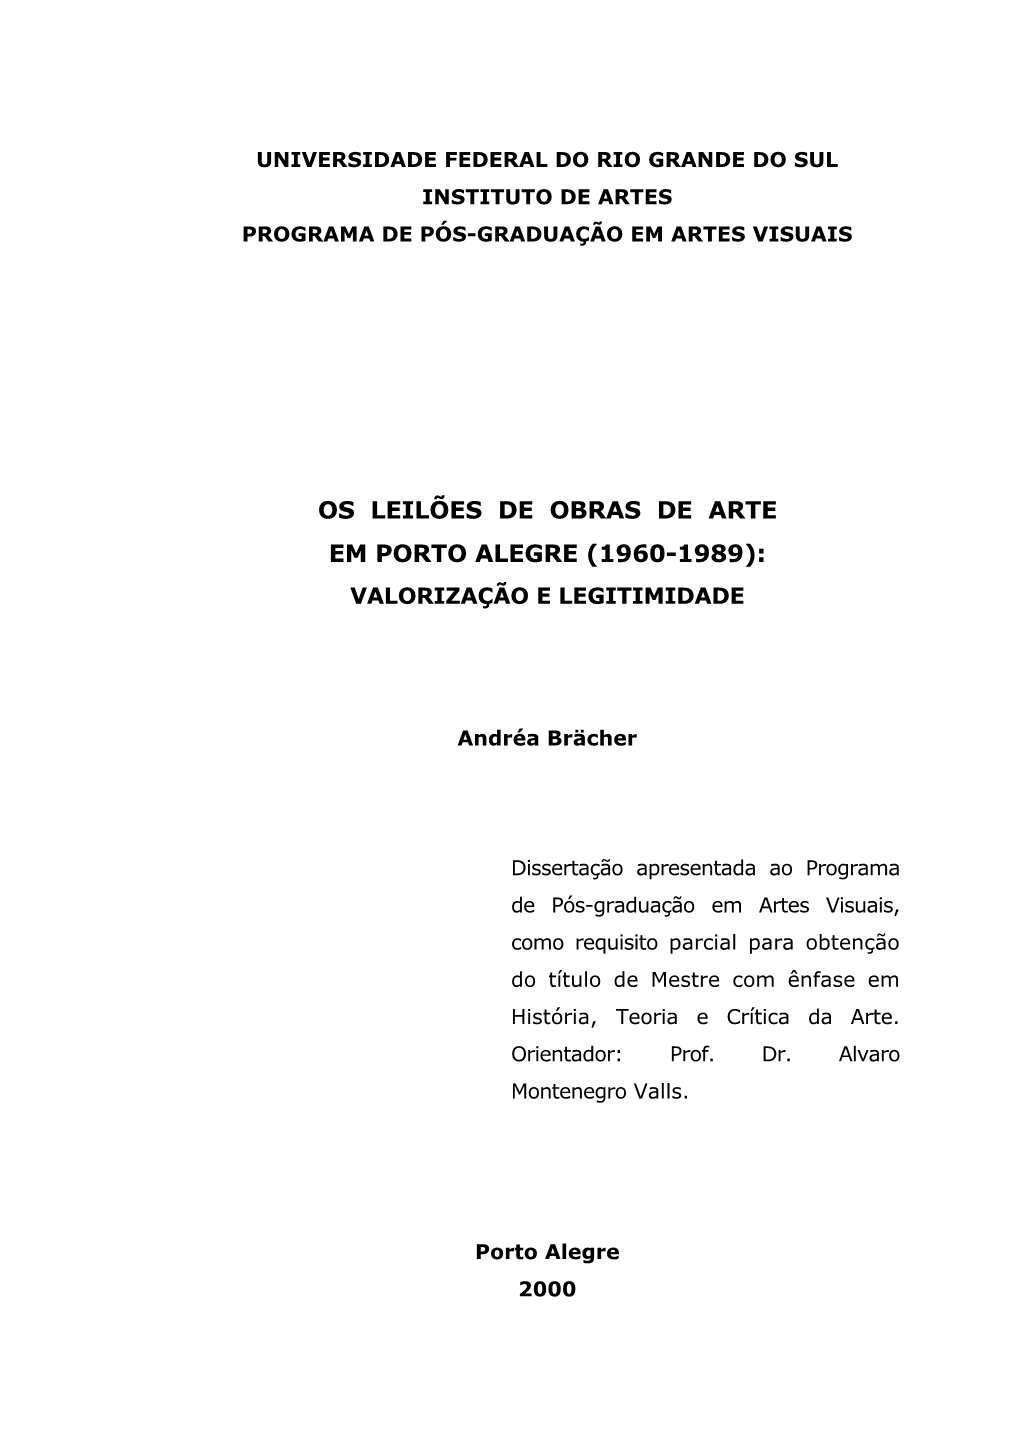 Os Leilões De Obras De Arte Em Porto Alegre (1960-1989): Valorização E Legitimidade